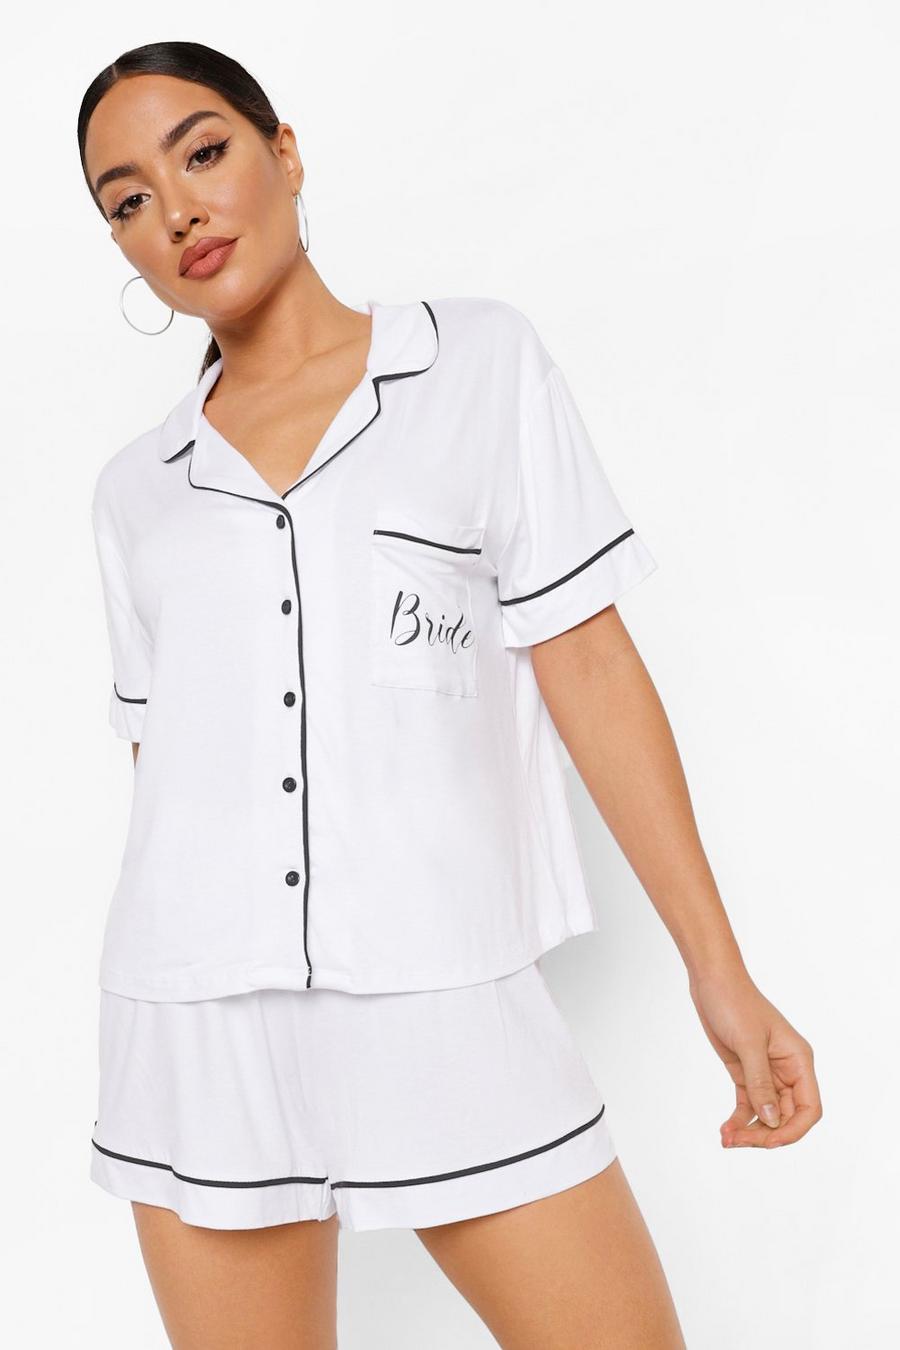 Set pigiama corto in jersey con scritta Bride e bottoni, Bianco blanco